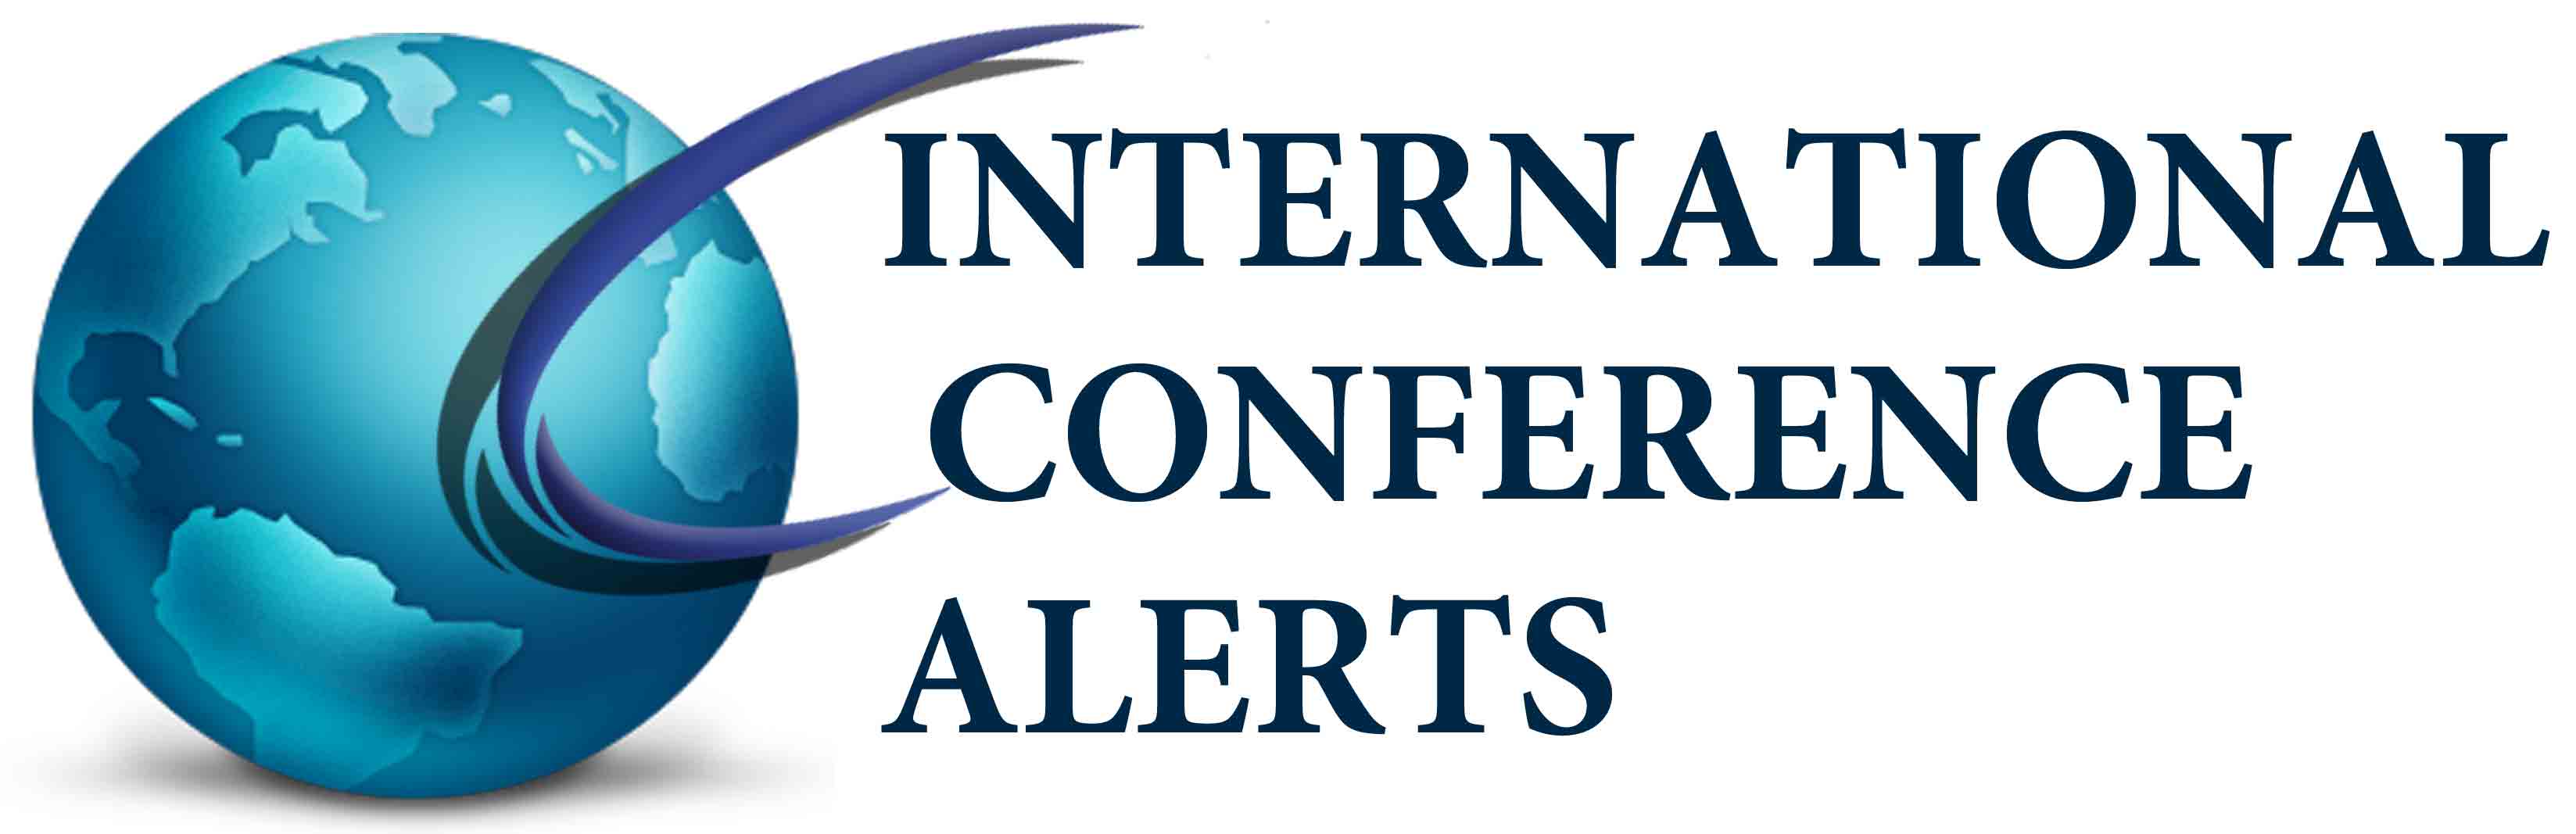 Sponsor Name	Sponsor Image	Action International Conference Alerts